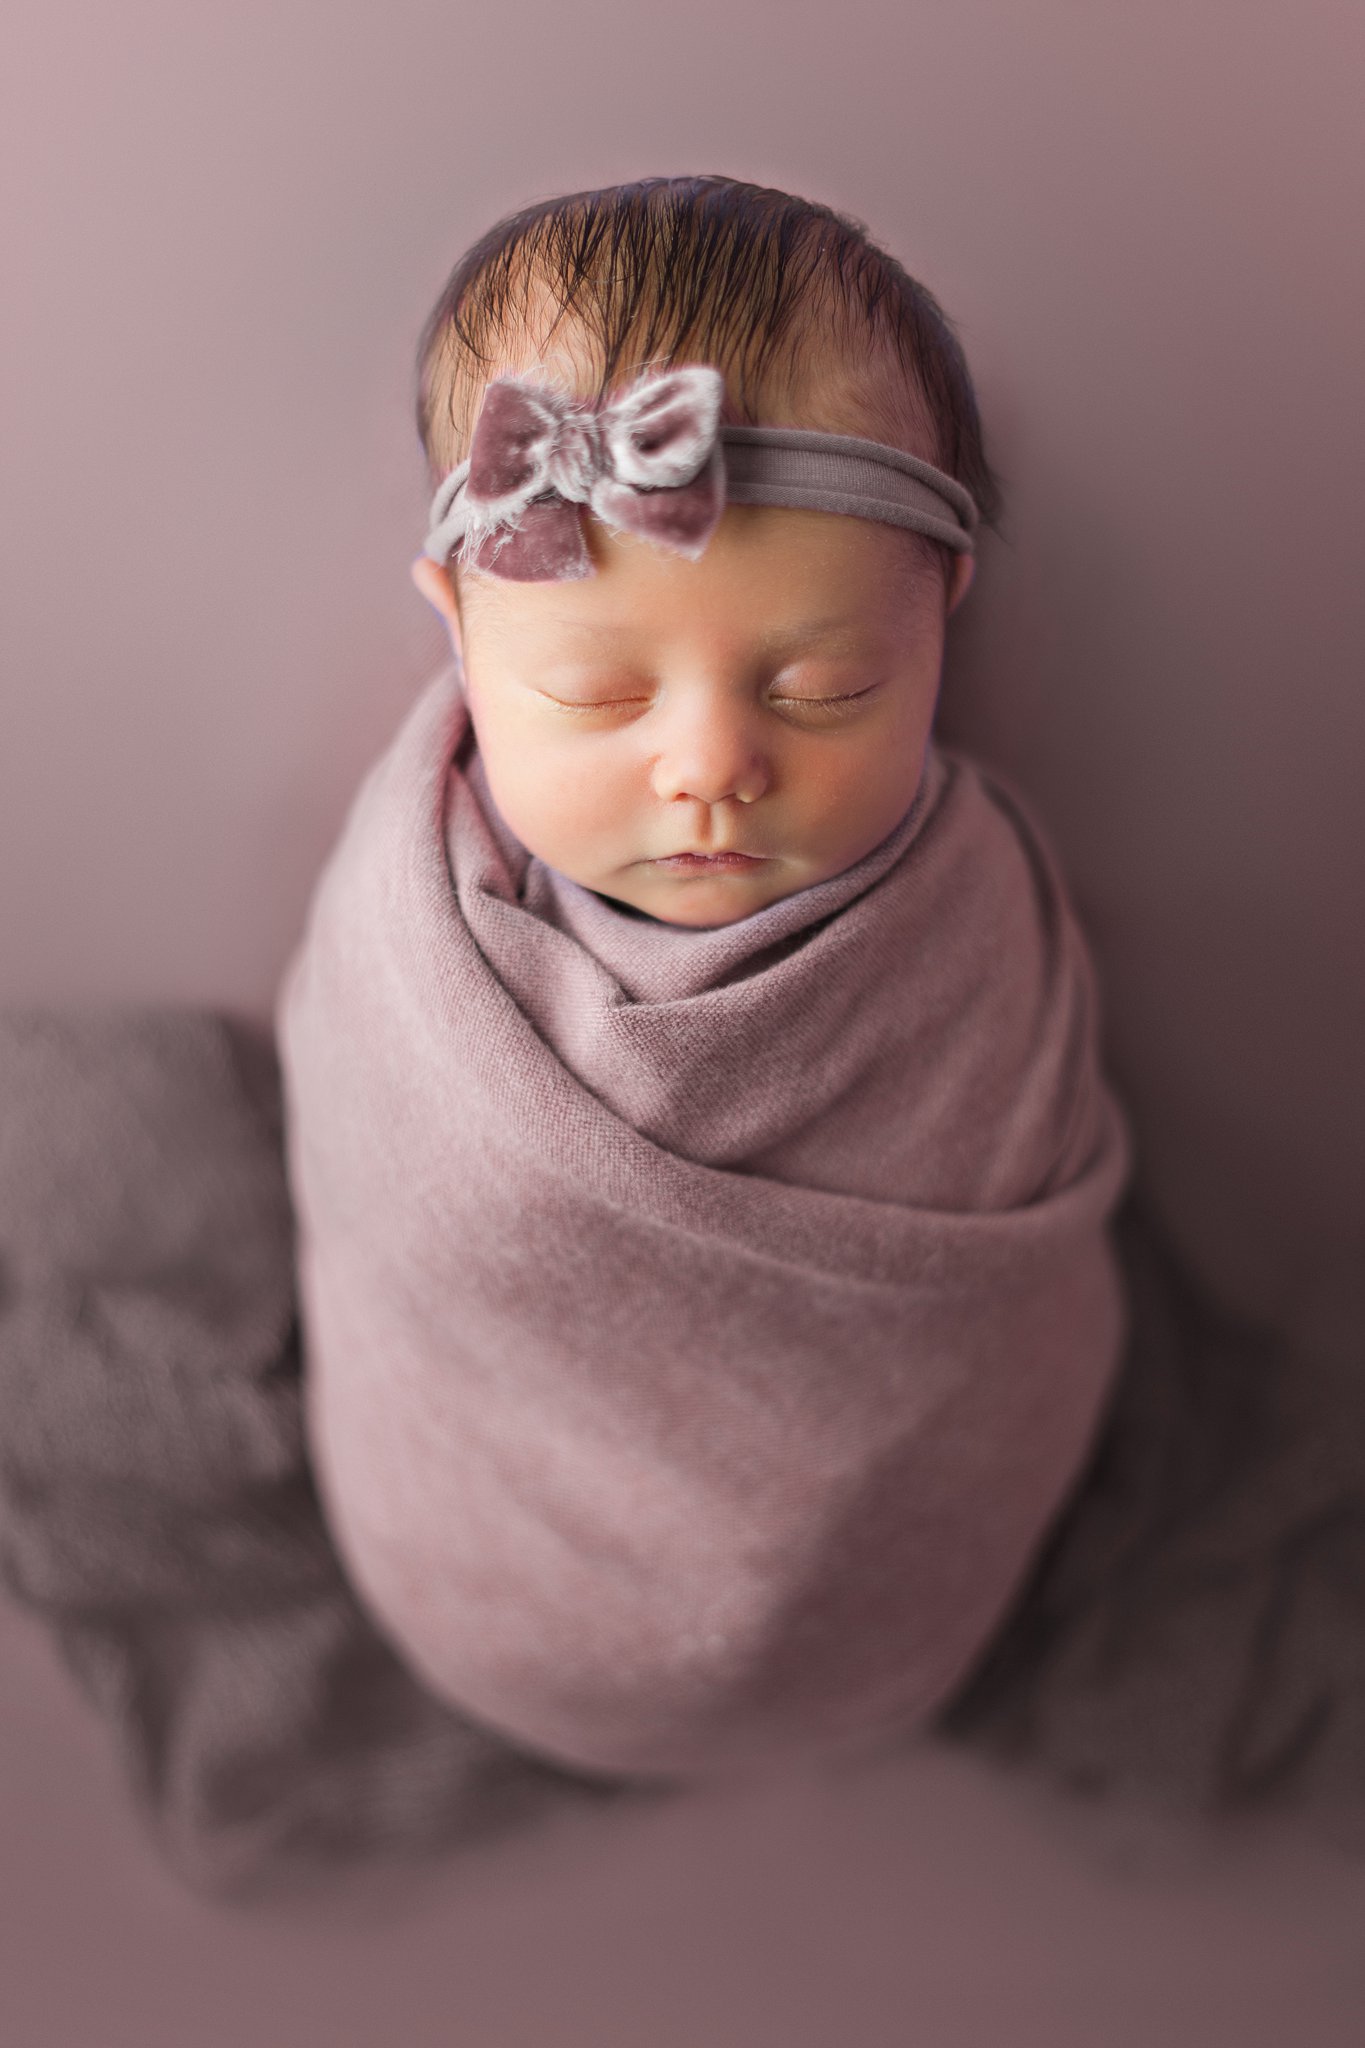 A swaddled newborn baby sleeps in a purple blanket